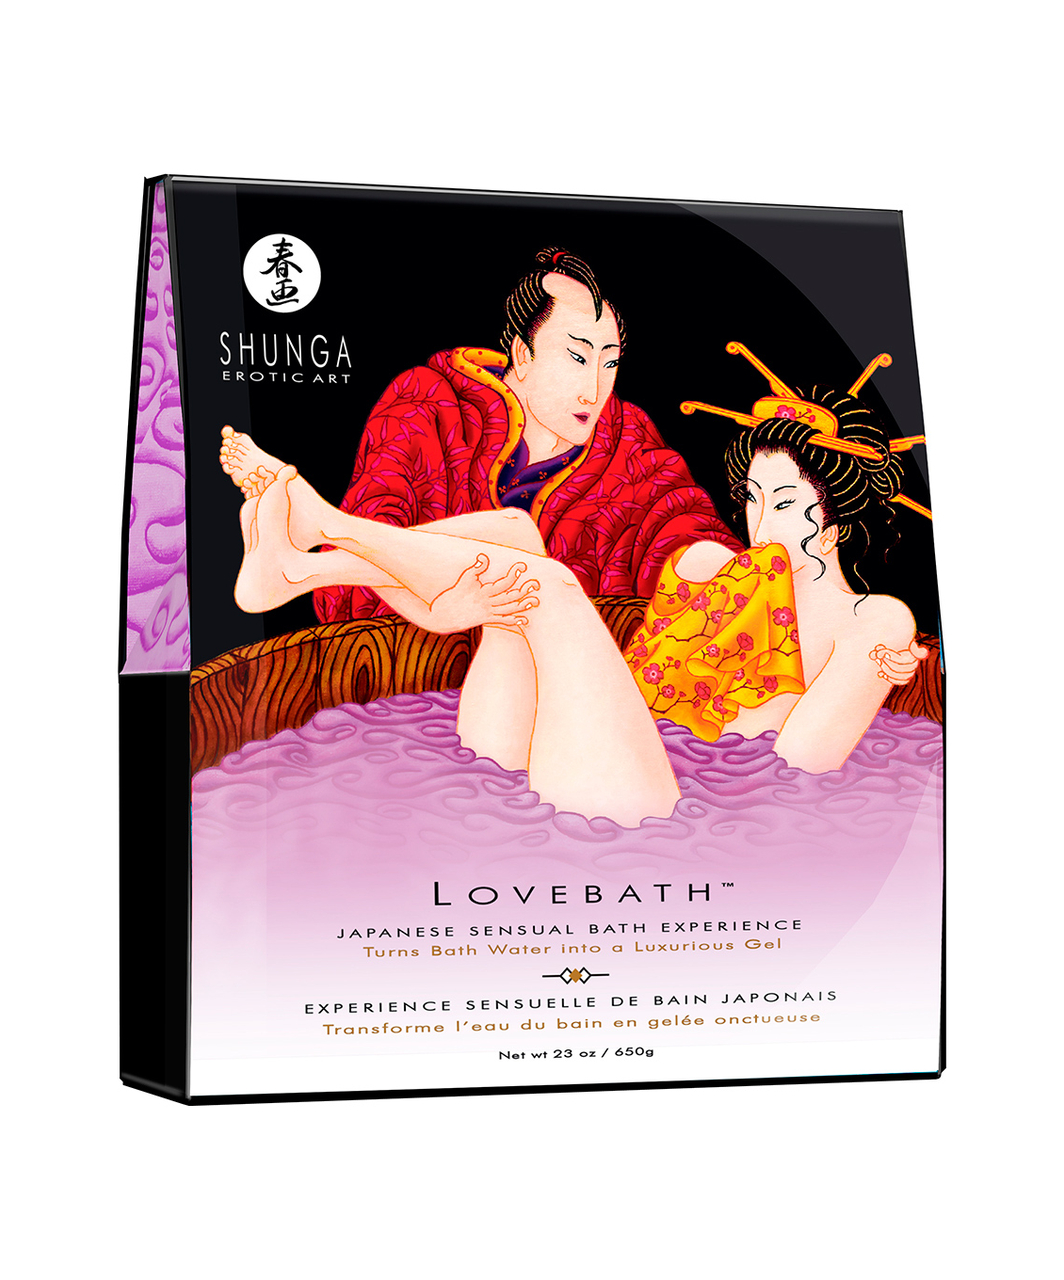 Shunga Lovebath komplekt sensuaalseks vannirituaaliks